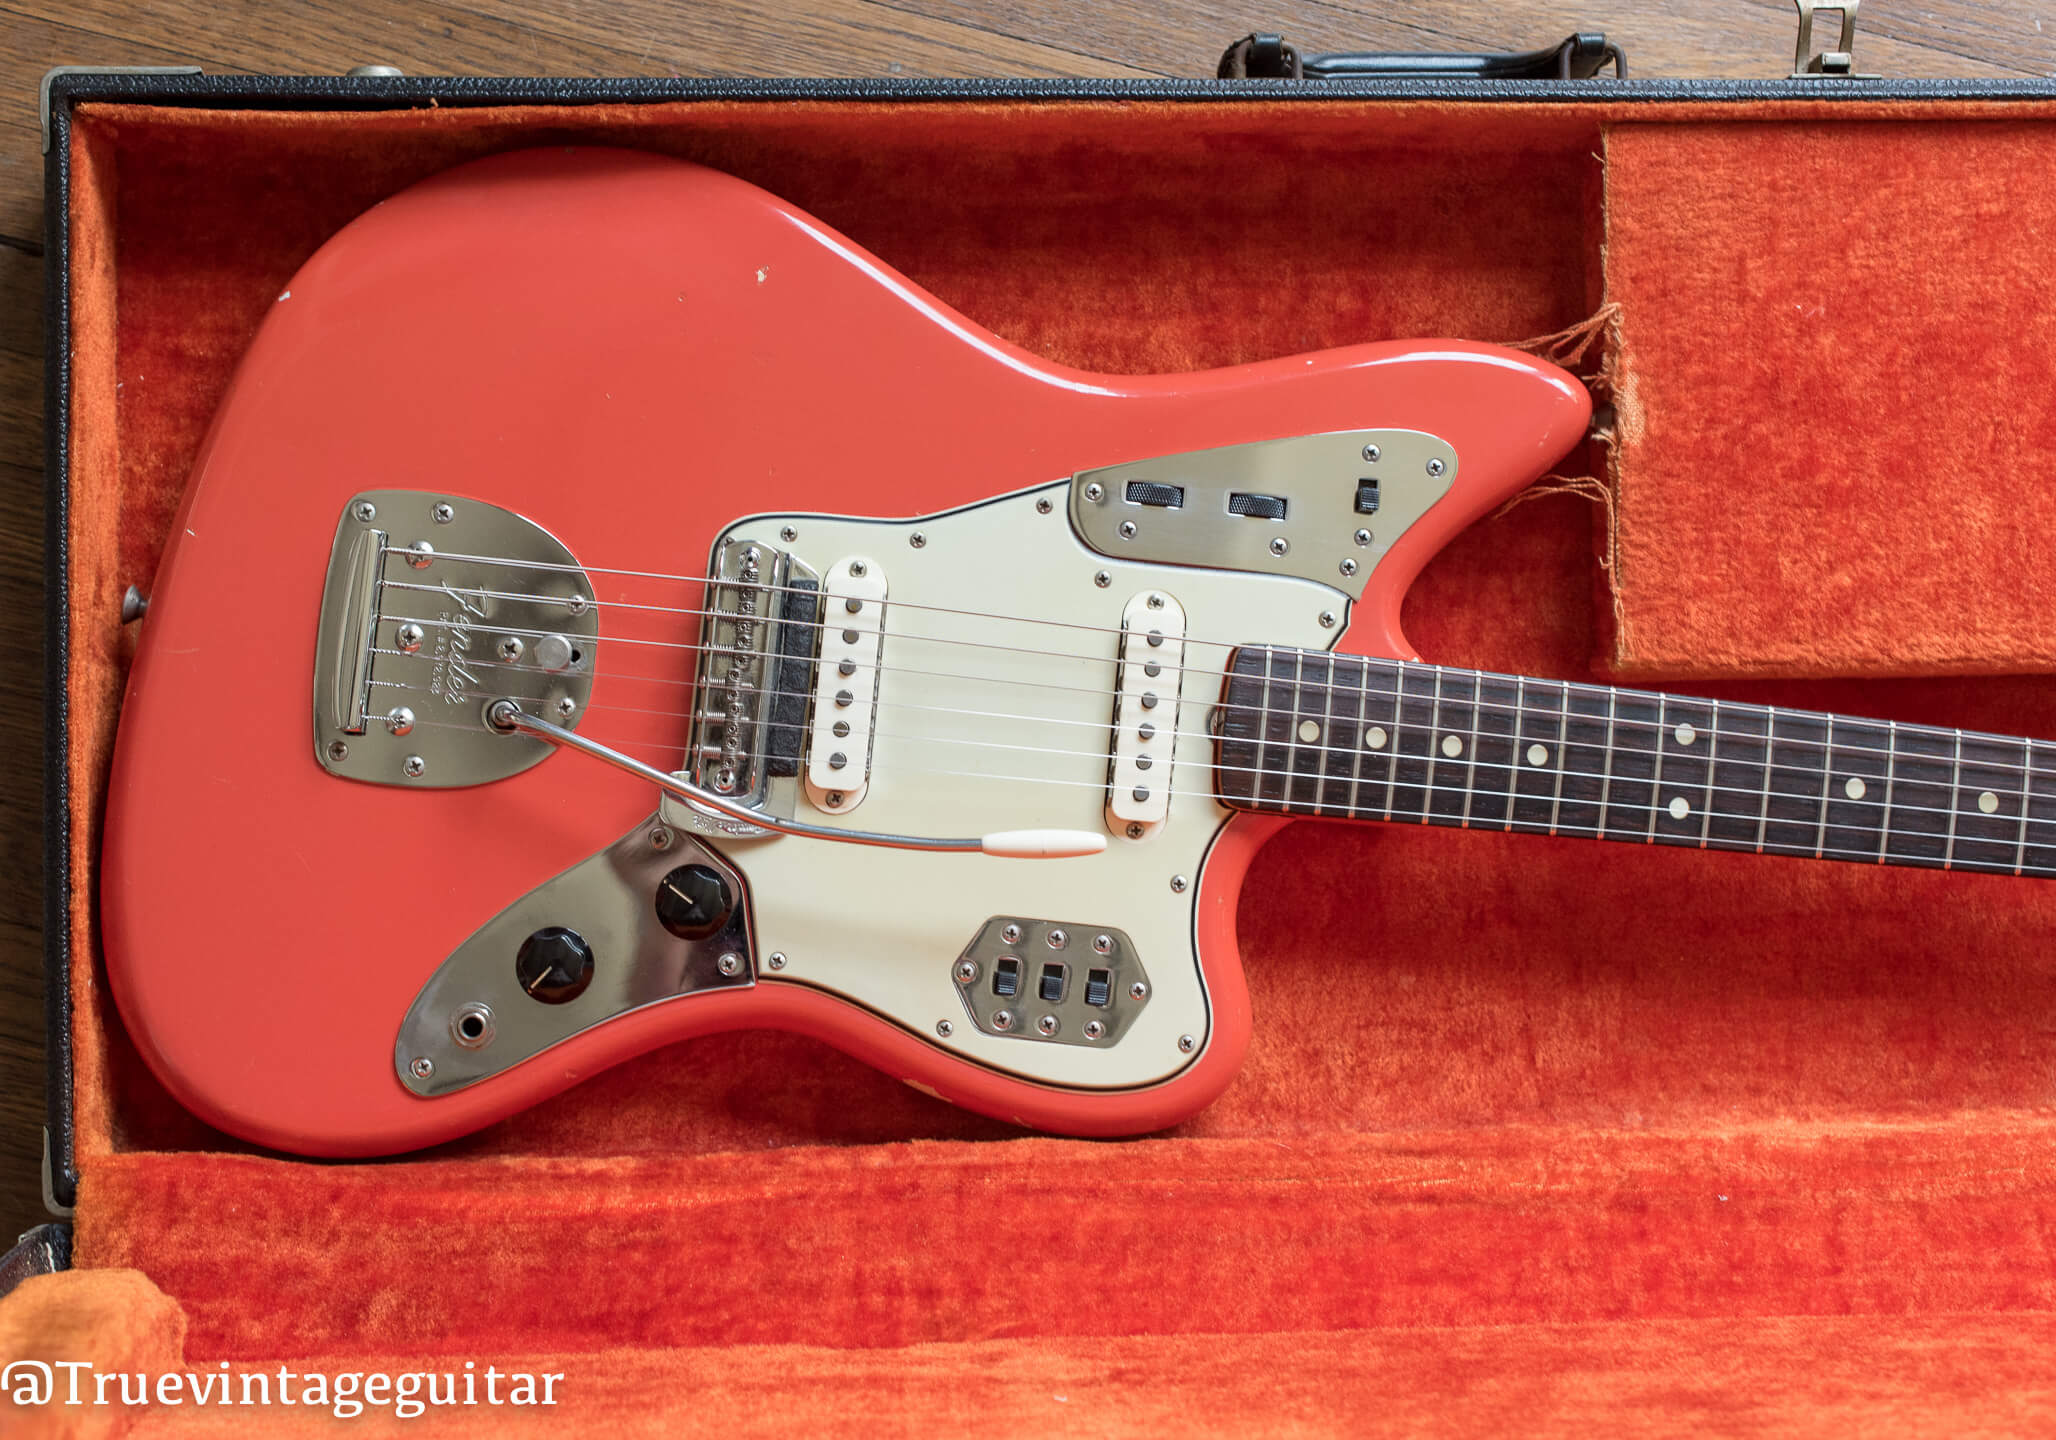 Fender Jaguar 1965 guitar in rare custom color Fiesta Red that looks pink and orange